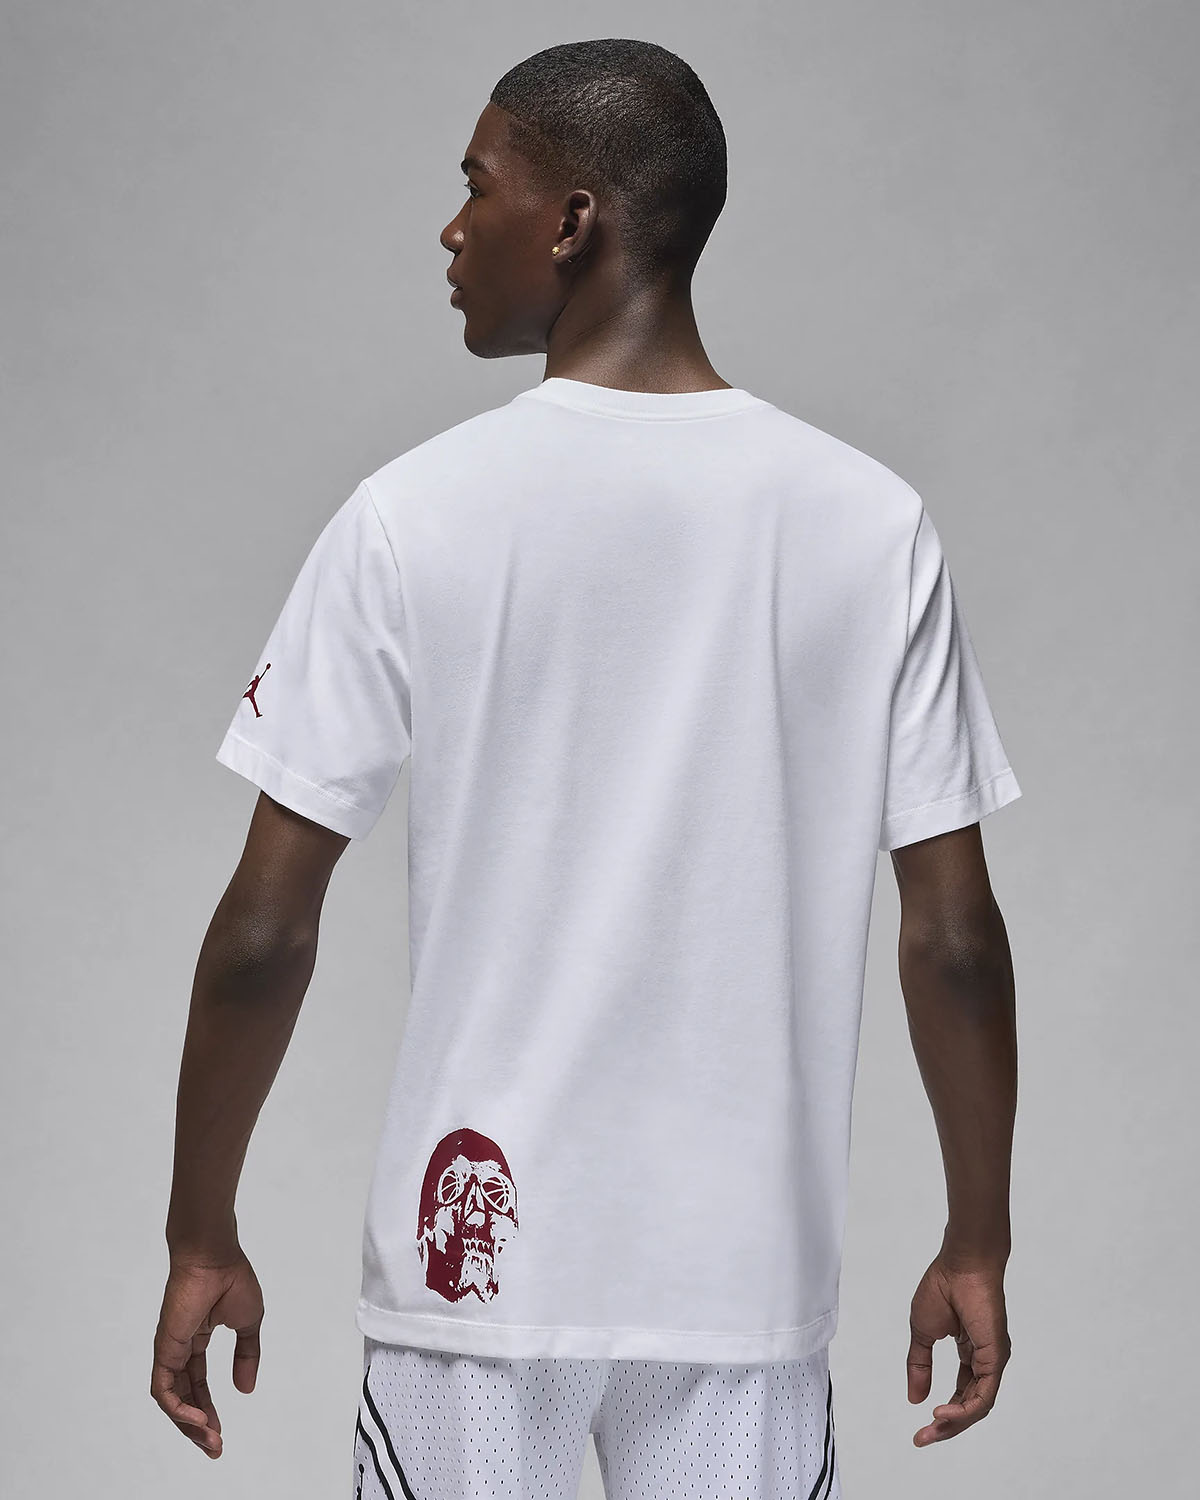 Jordan Brand Flight T Shirt White Team Red 2